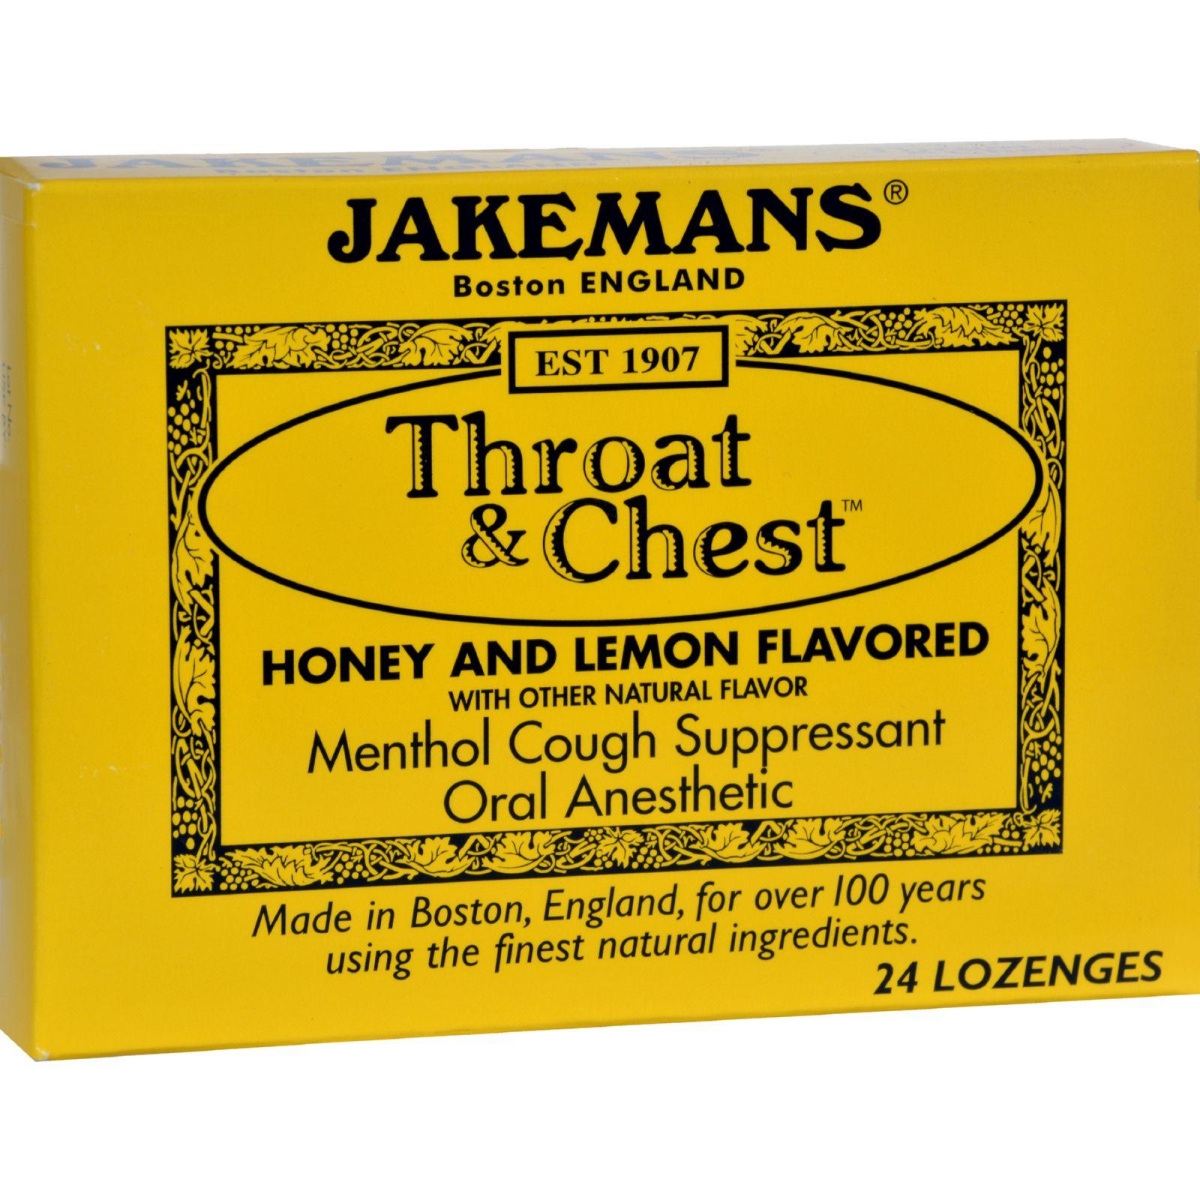 Hg0418608 Throat & Chest Lozenges, Honey & Lemon - Case Of 24, Pack Of 24